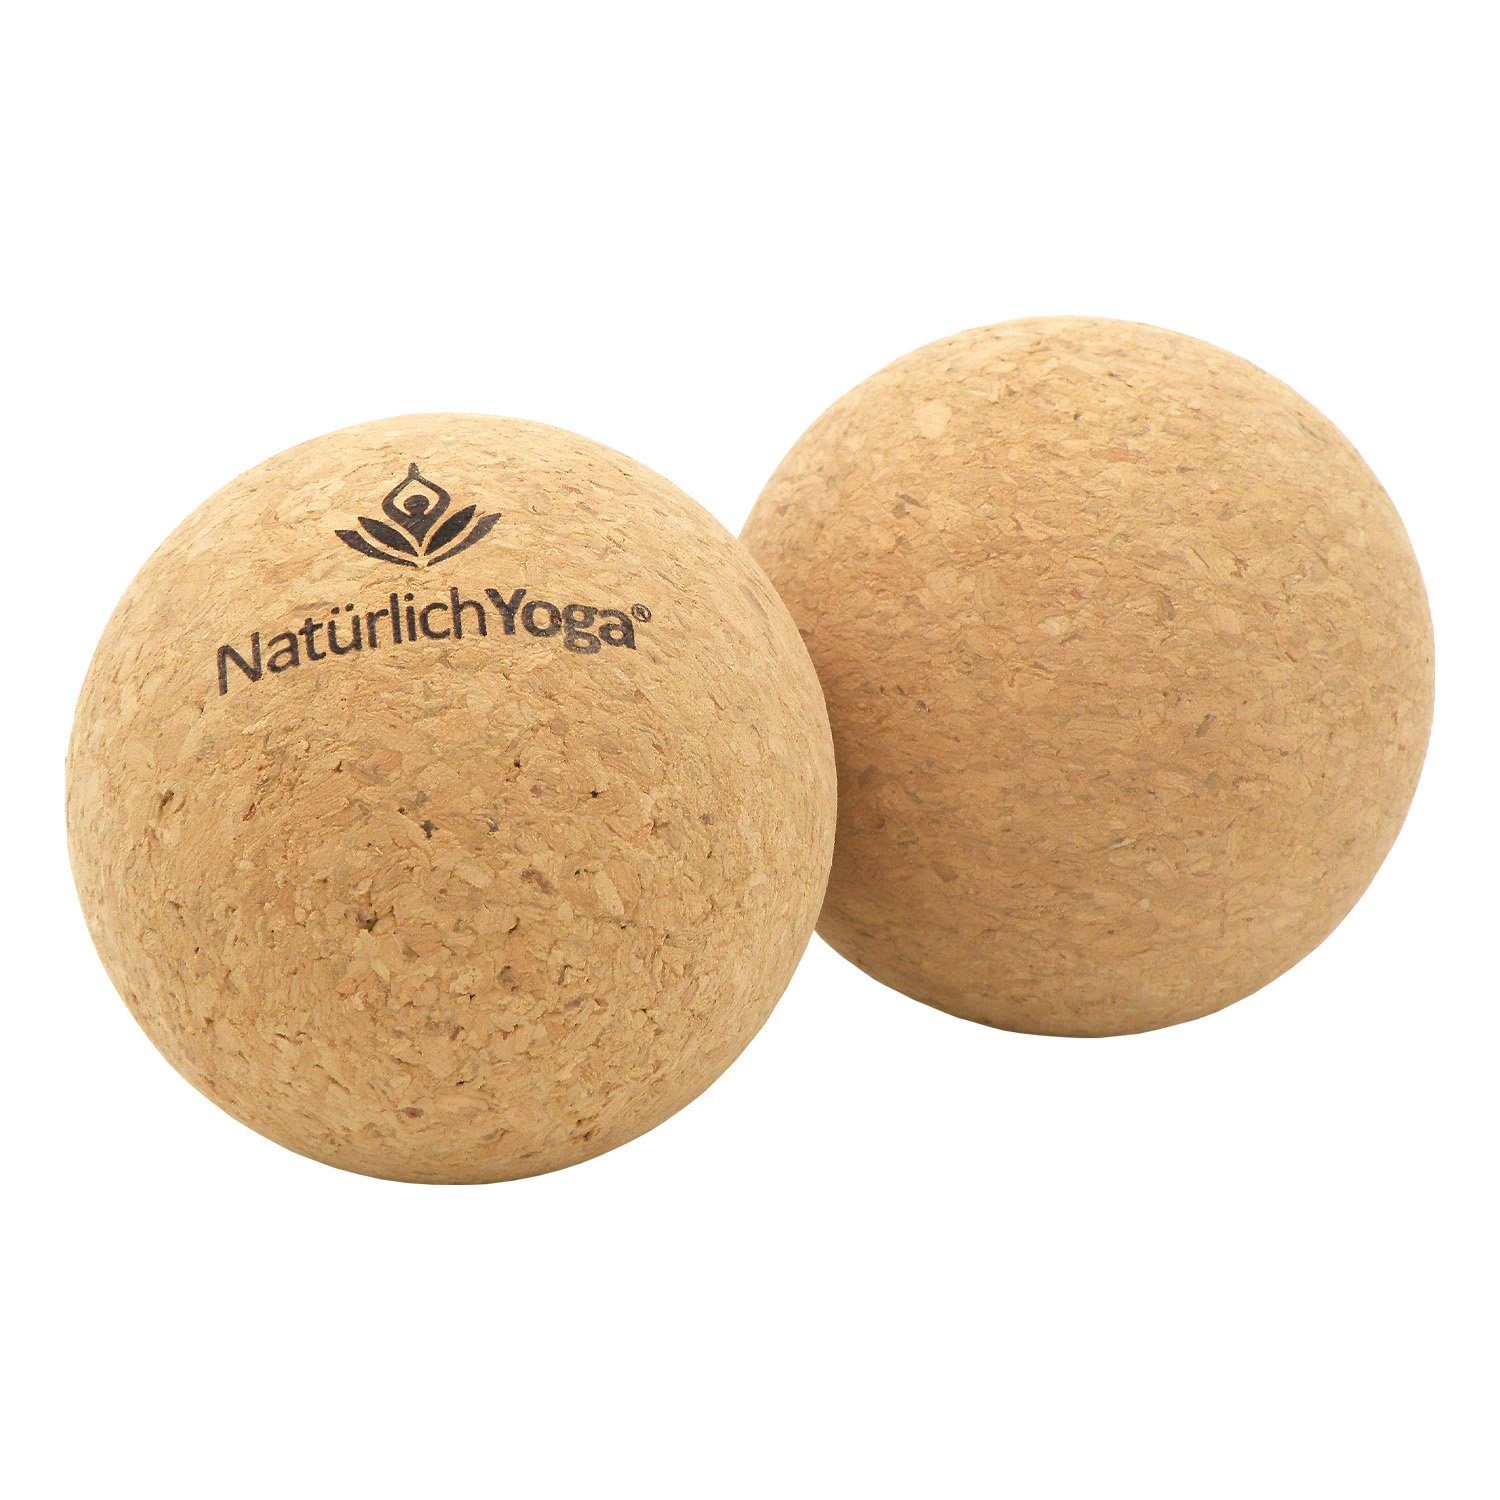 NatürlichYoga® Massageball Natürlich Yoga® Yogaball Set mit zwei Bällen - Faszienbälle aus echtem Kork - je 7 cm Durchmesser